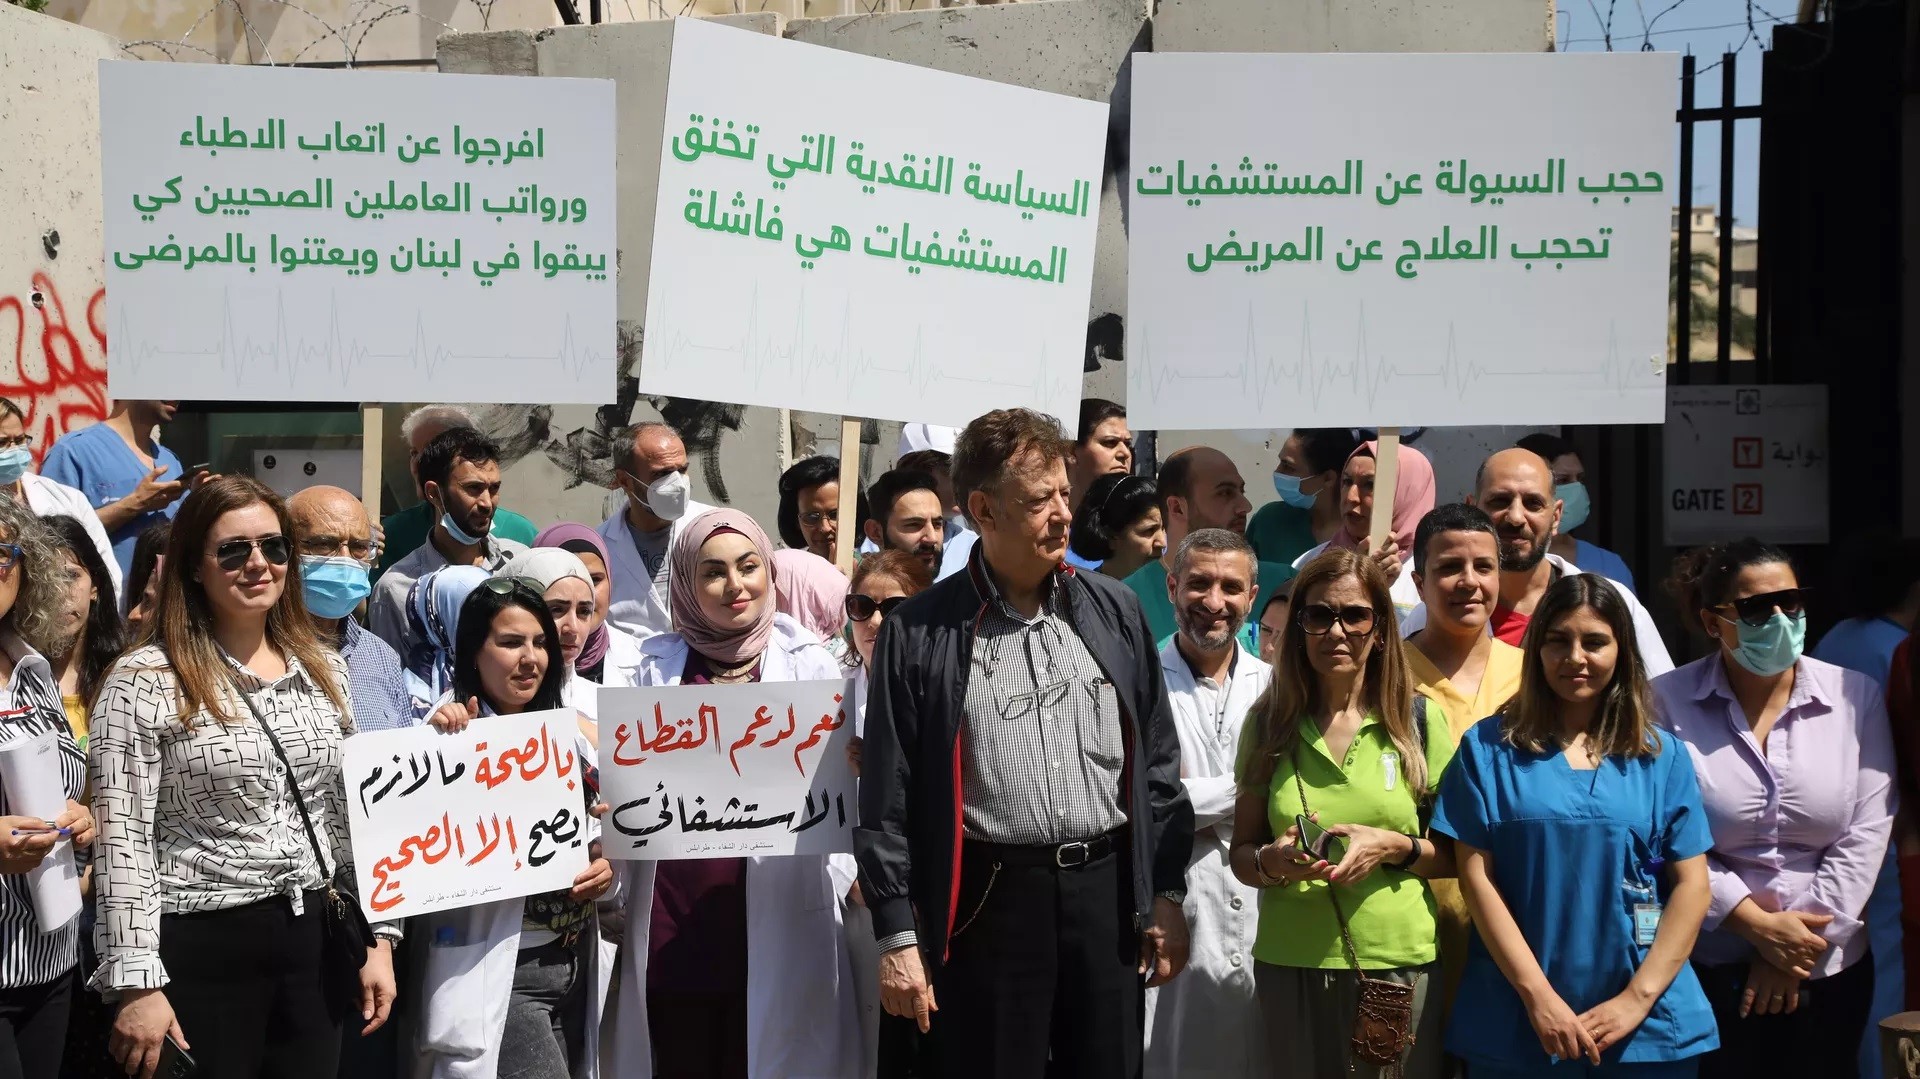 تظاهرة للقطاع الطبي والاستشفائي أمام مصرف لبنان "ندق ناقوس الخطر"